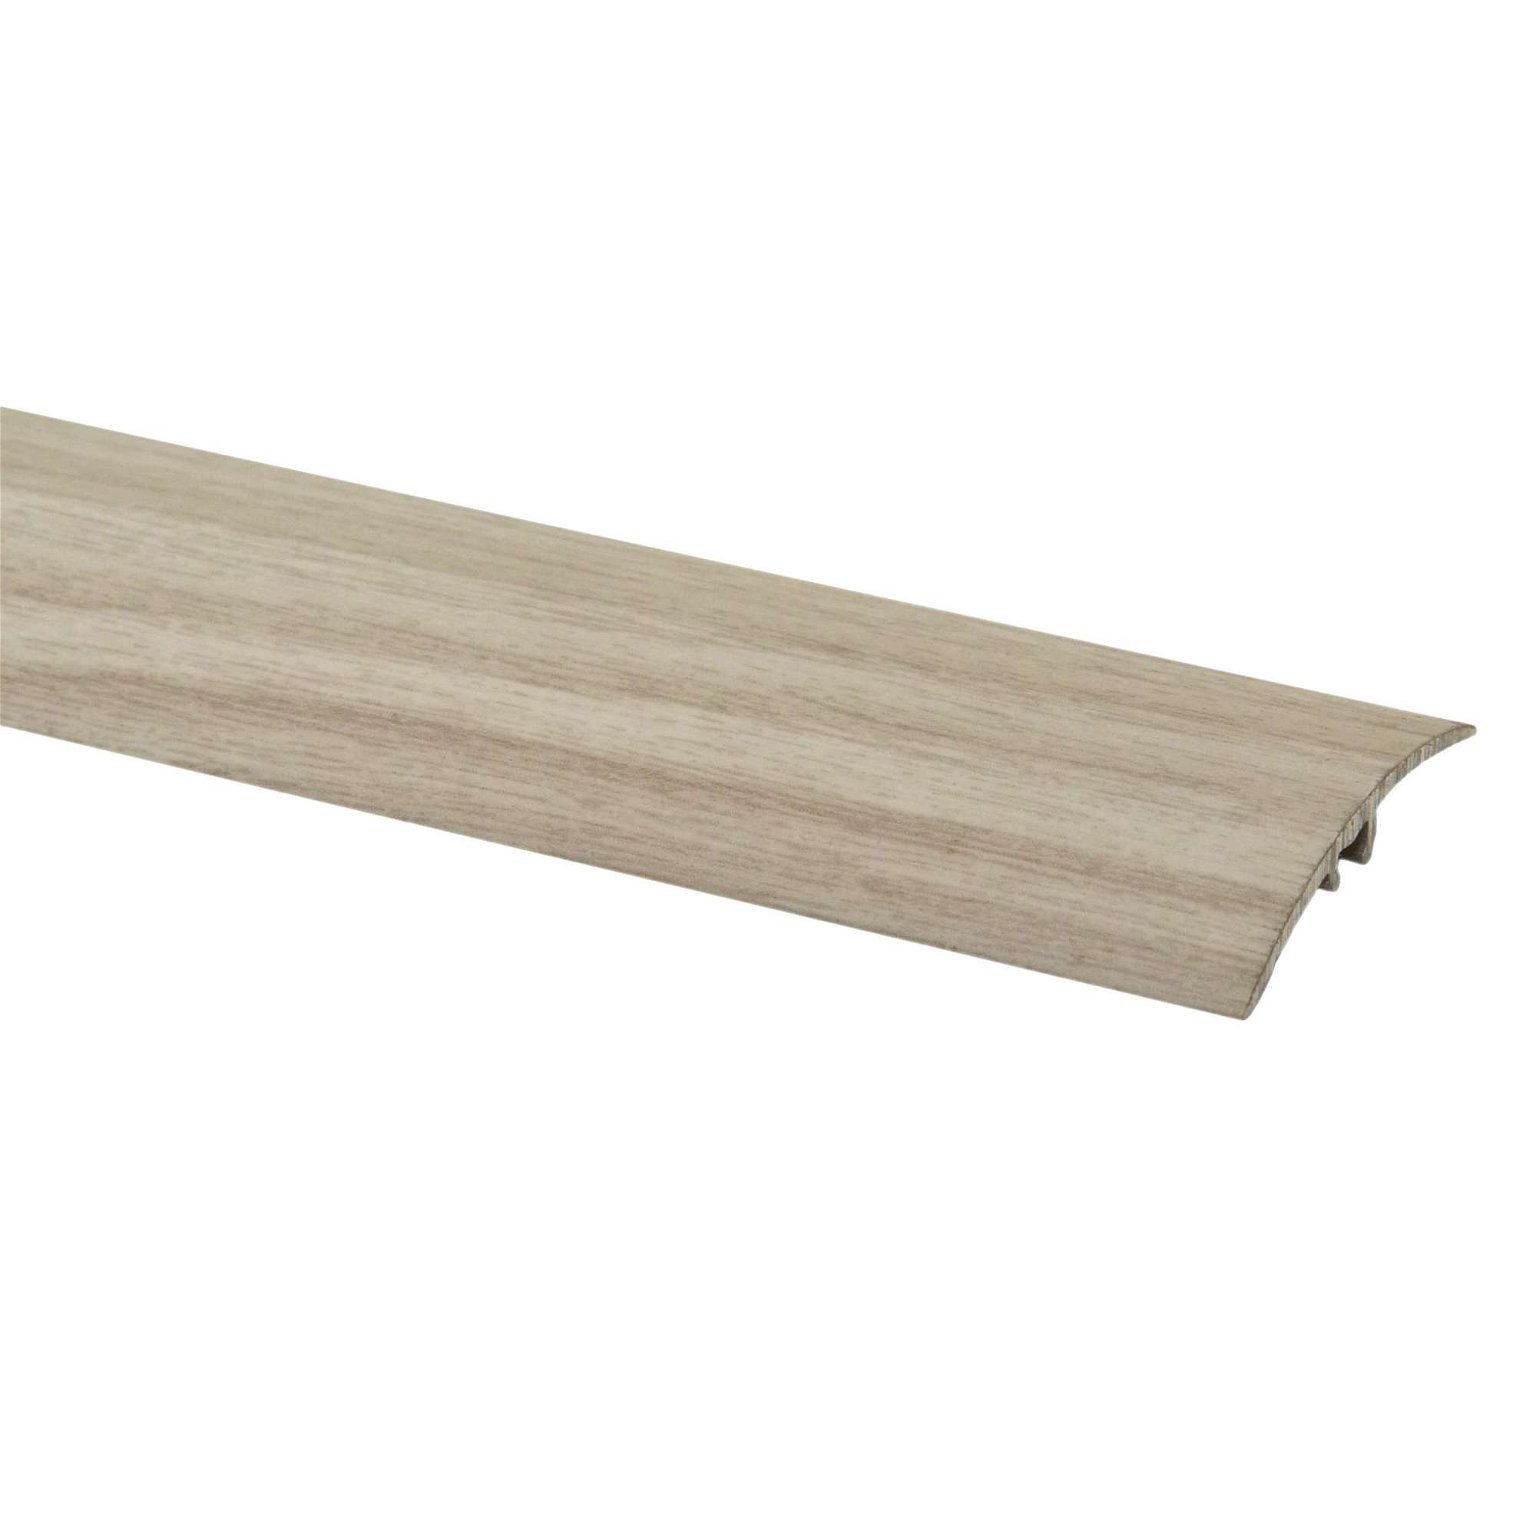 Aliumininė grindų juostelė SM2 W1, baltojo ąžuolo sp., 41 mm pločio, 186 cm ilgio